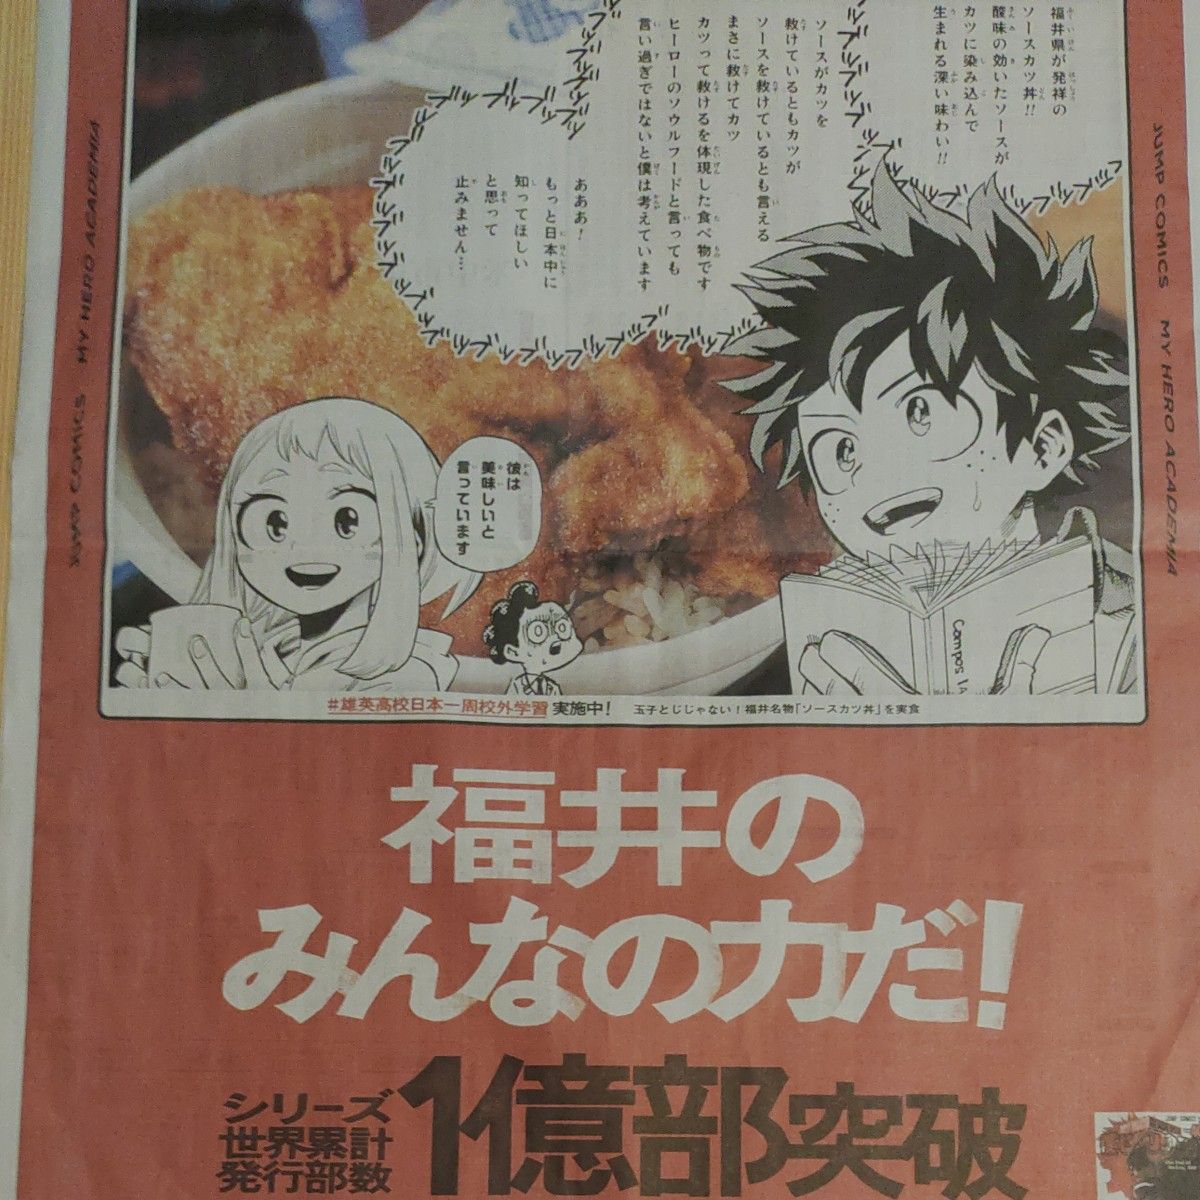 僕のヒーローアカデミア 福井新聞 4月6日広告 